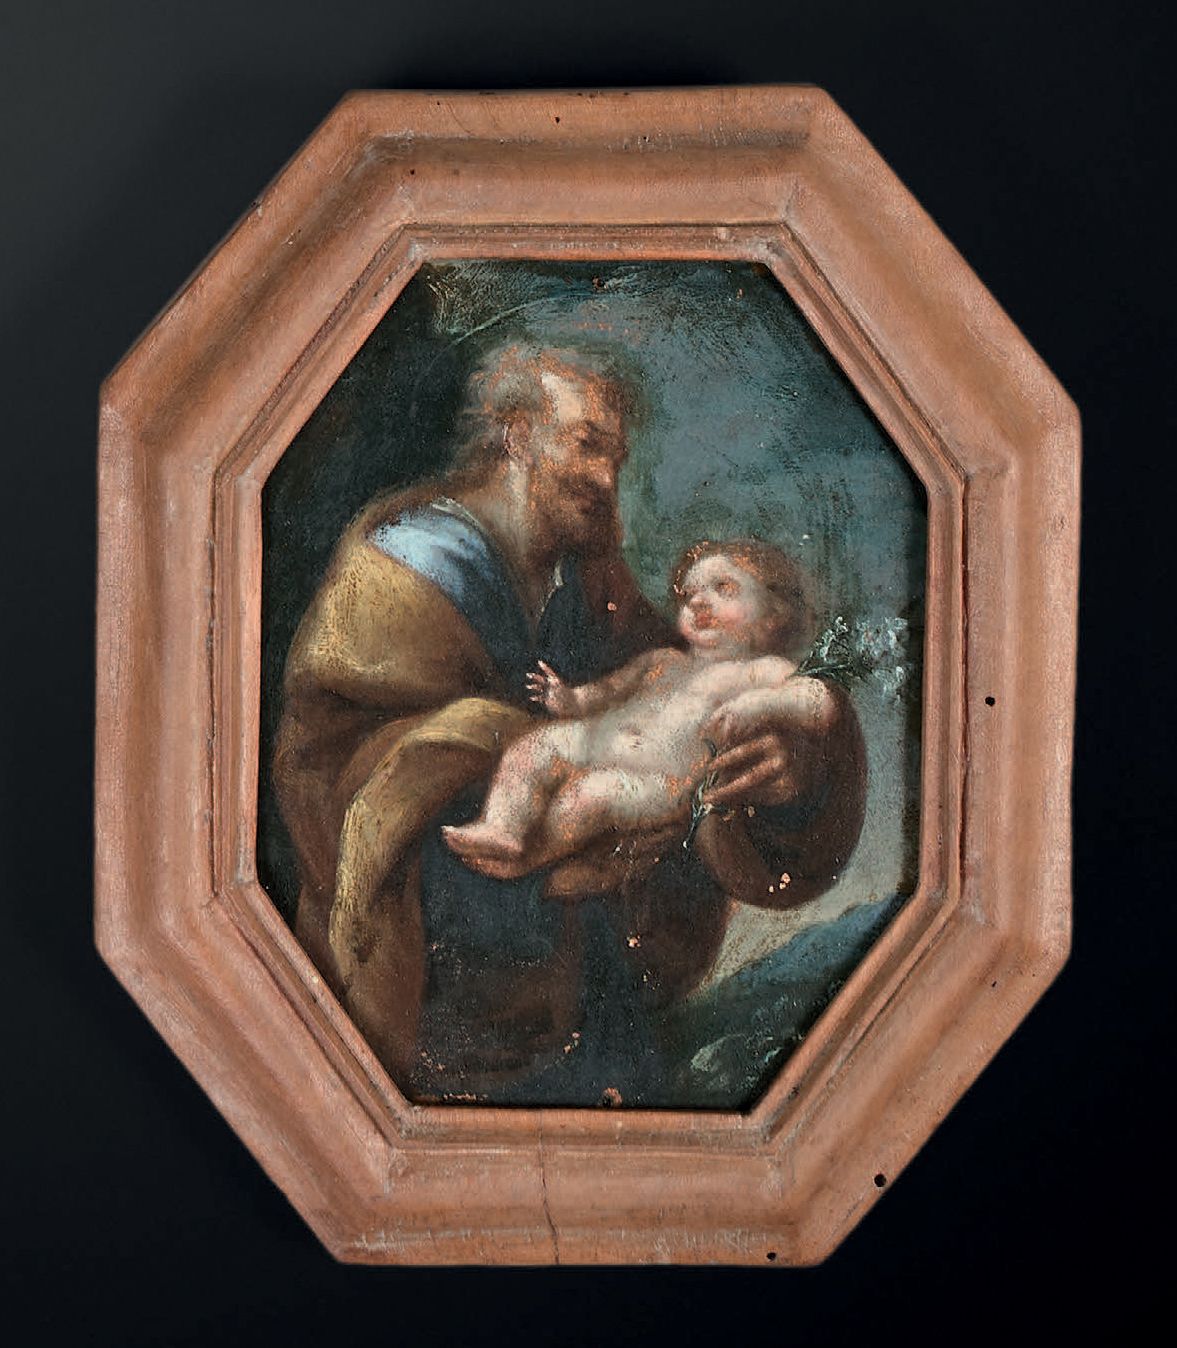 ECOLE ITALIENNE DU DÉBUT DU XVIIIe SIÈCLE 
L'enfant Jésus porté par un saint



&hellip;